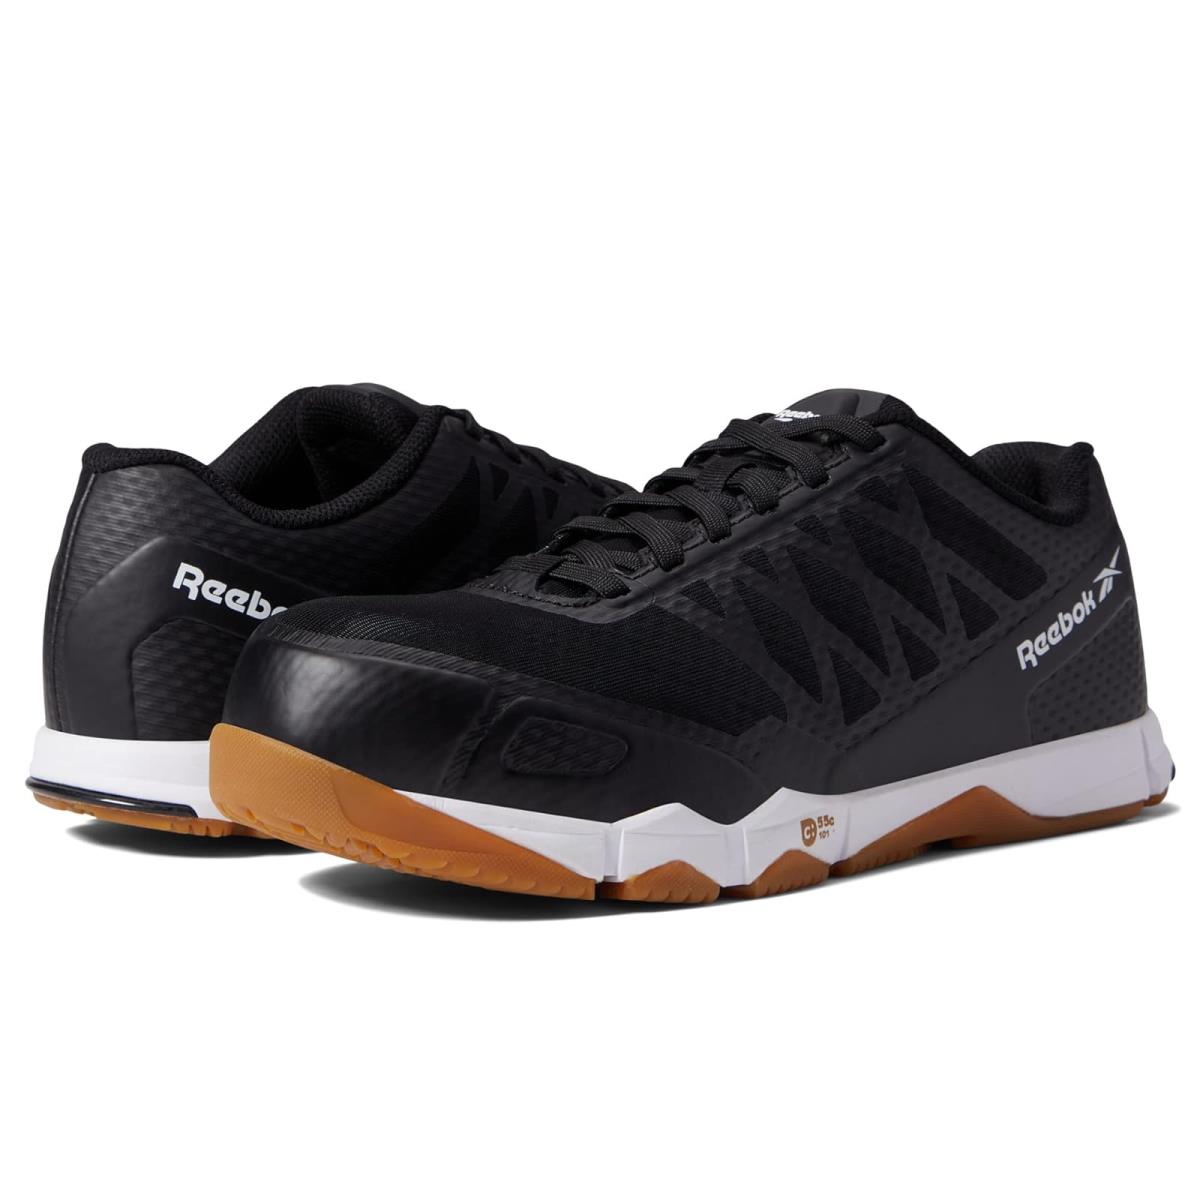 Woman`s Sneakers Athletic Shoes Reebok Work Speed TR Work EH Comp Toe Black/Gum